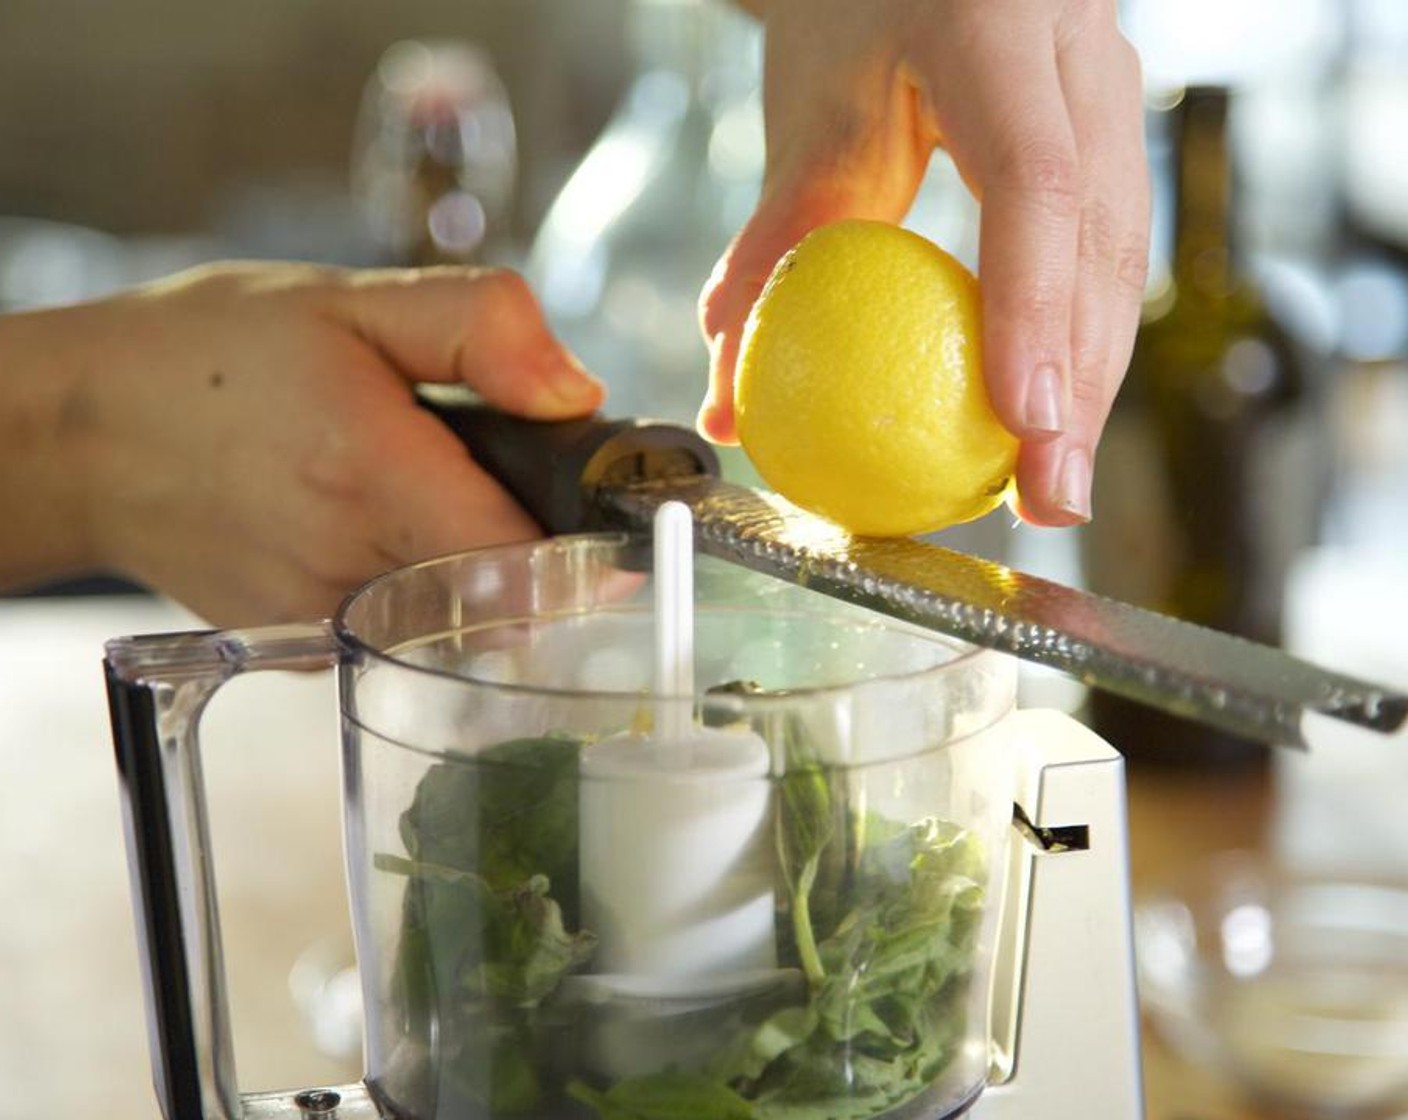 Schritt 2 Die Hälfte der Zitrone (1) direkt in die Küchenmaschine raspeln. Den Saft der Zitronenhälfte in eine kleine Schüssel geben und die Kerne mit einer Gabel entfernen. Den Zitronensaft in die Küchenmaschine hinzugiessen.